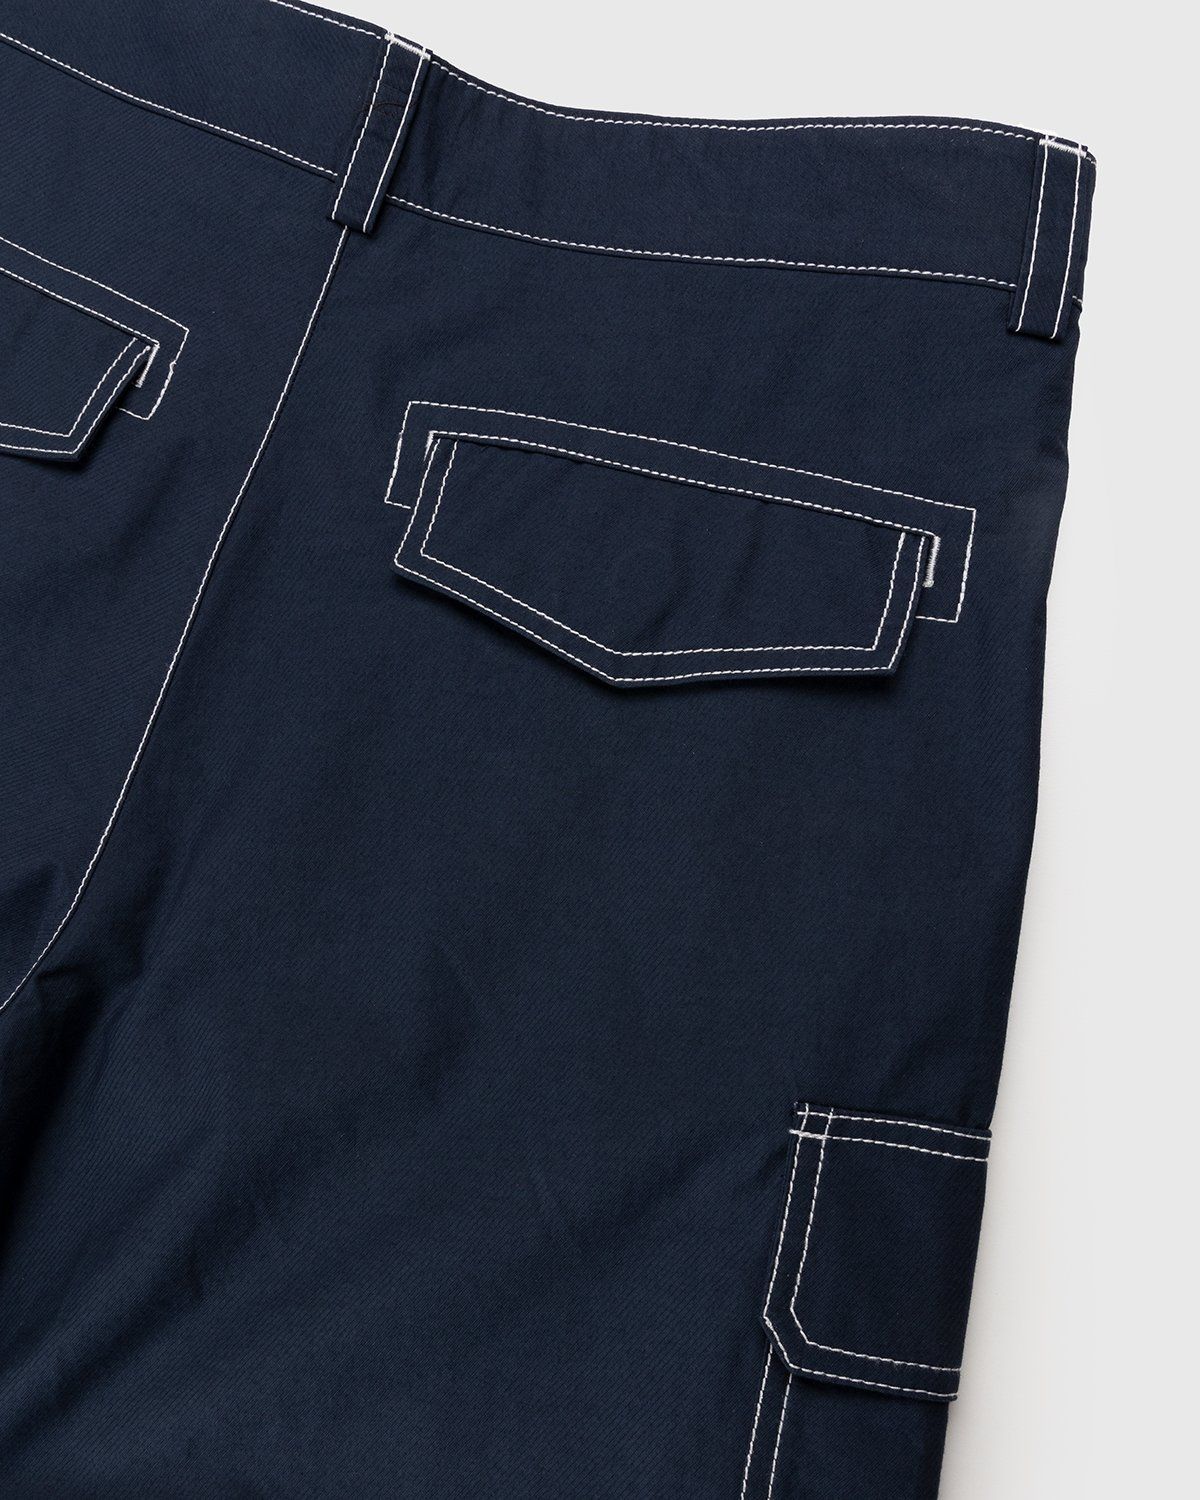 JACQUEMUS – Le Pantalon Peche Navy - Cargo Pants - Blue - Image 5